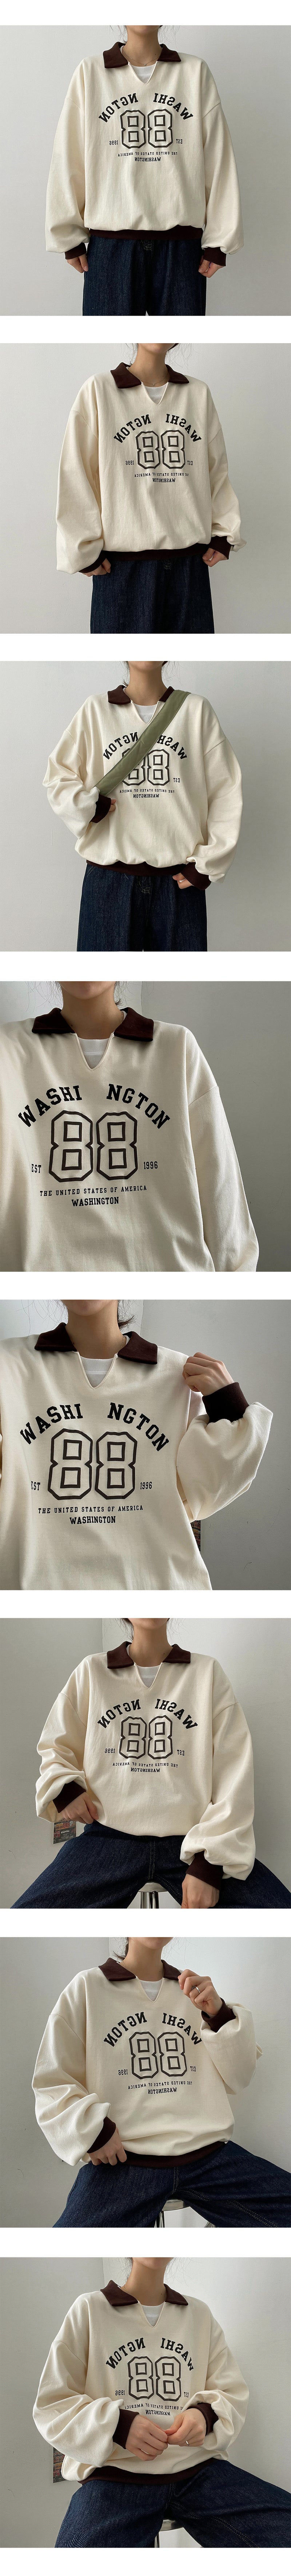 アーム配色カラースウェットシャツ/Arm Colored collar sweatshirt